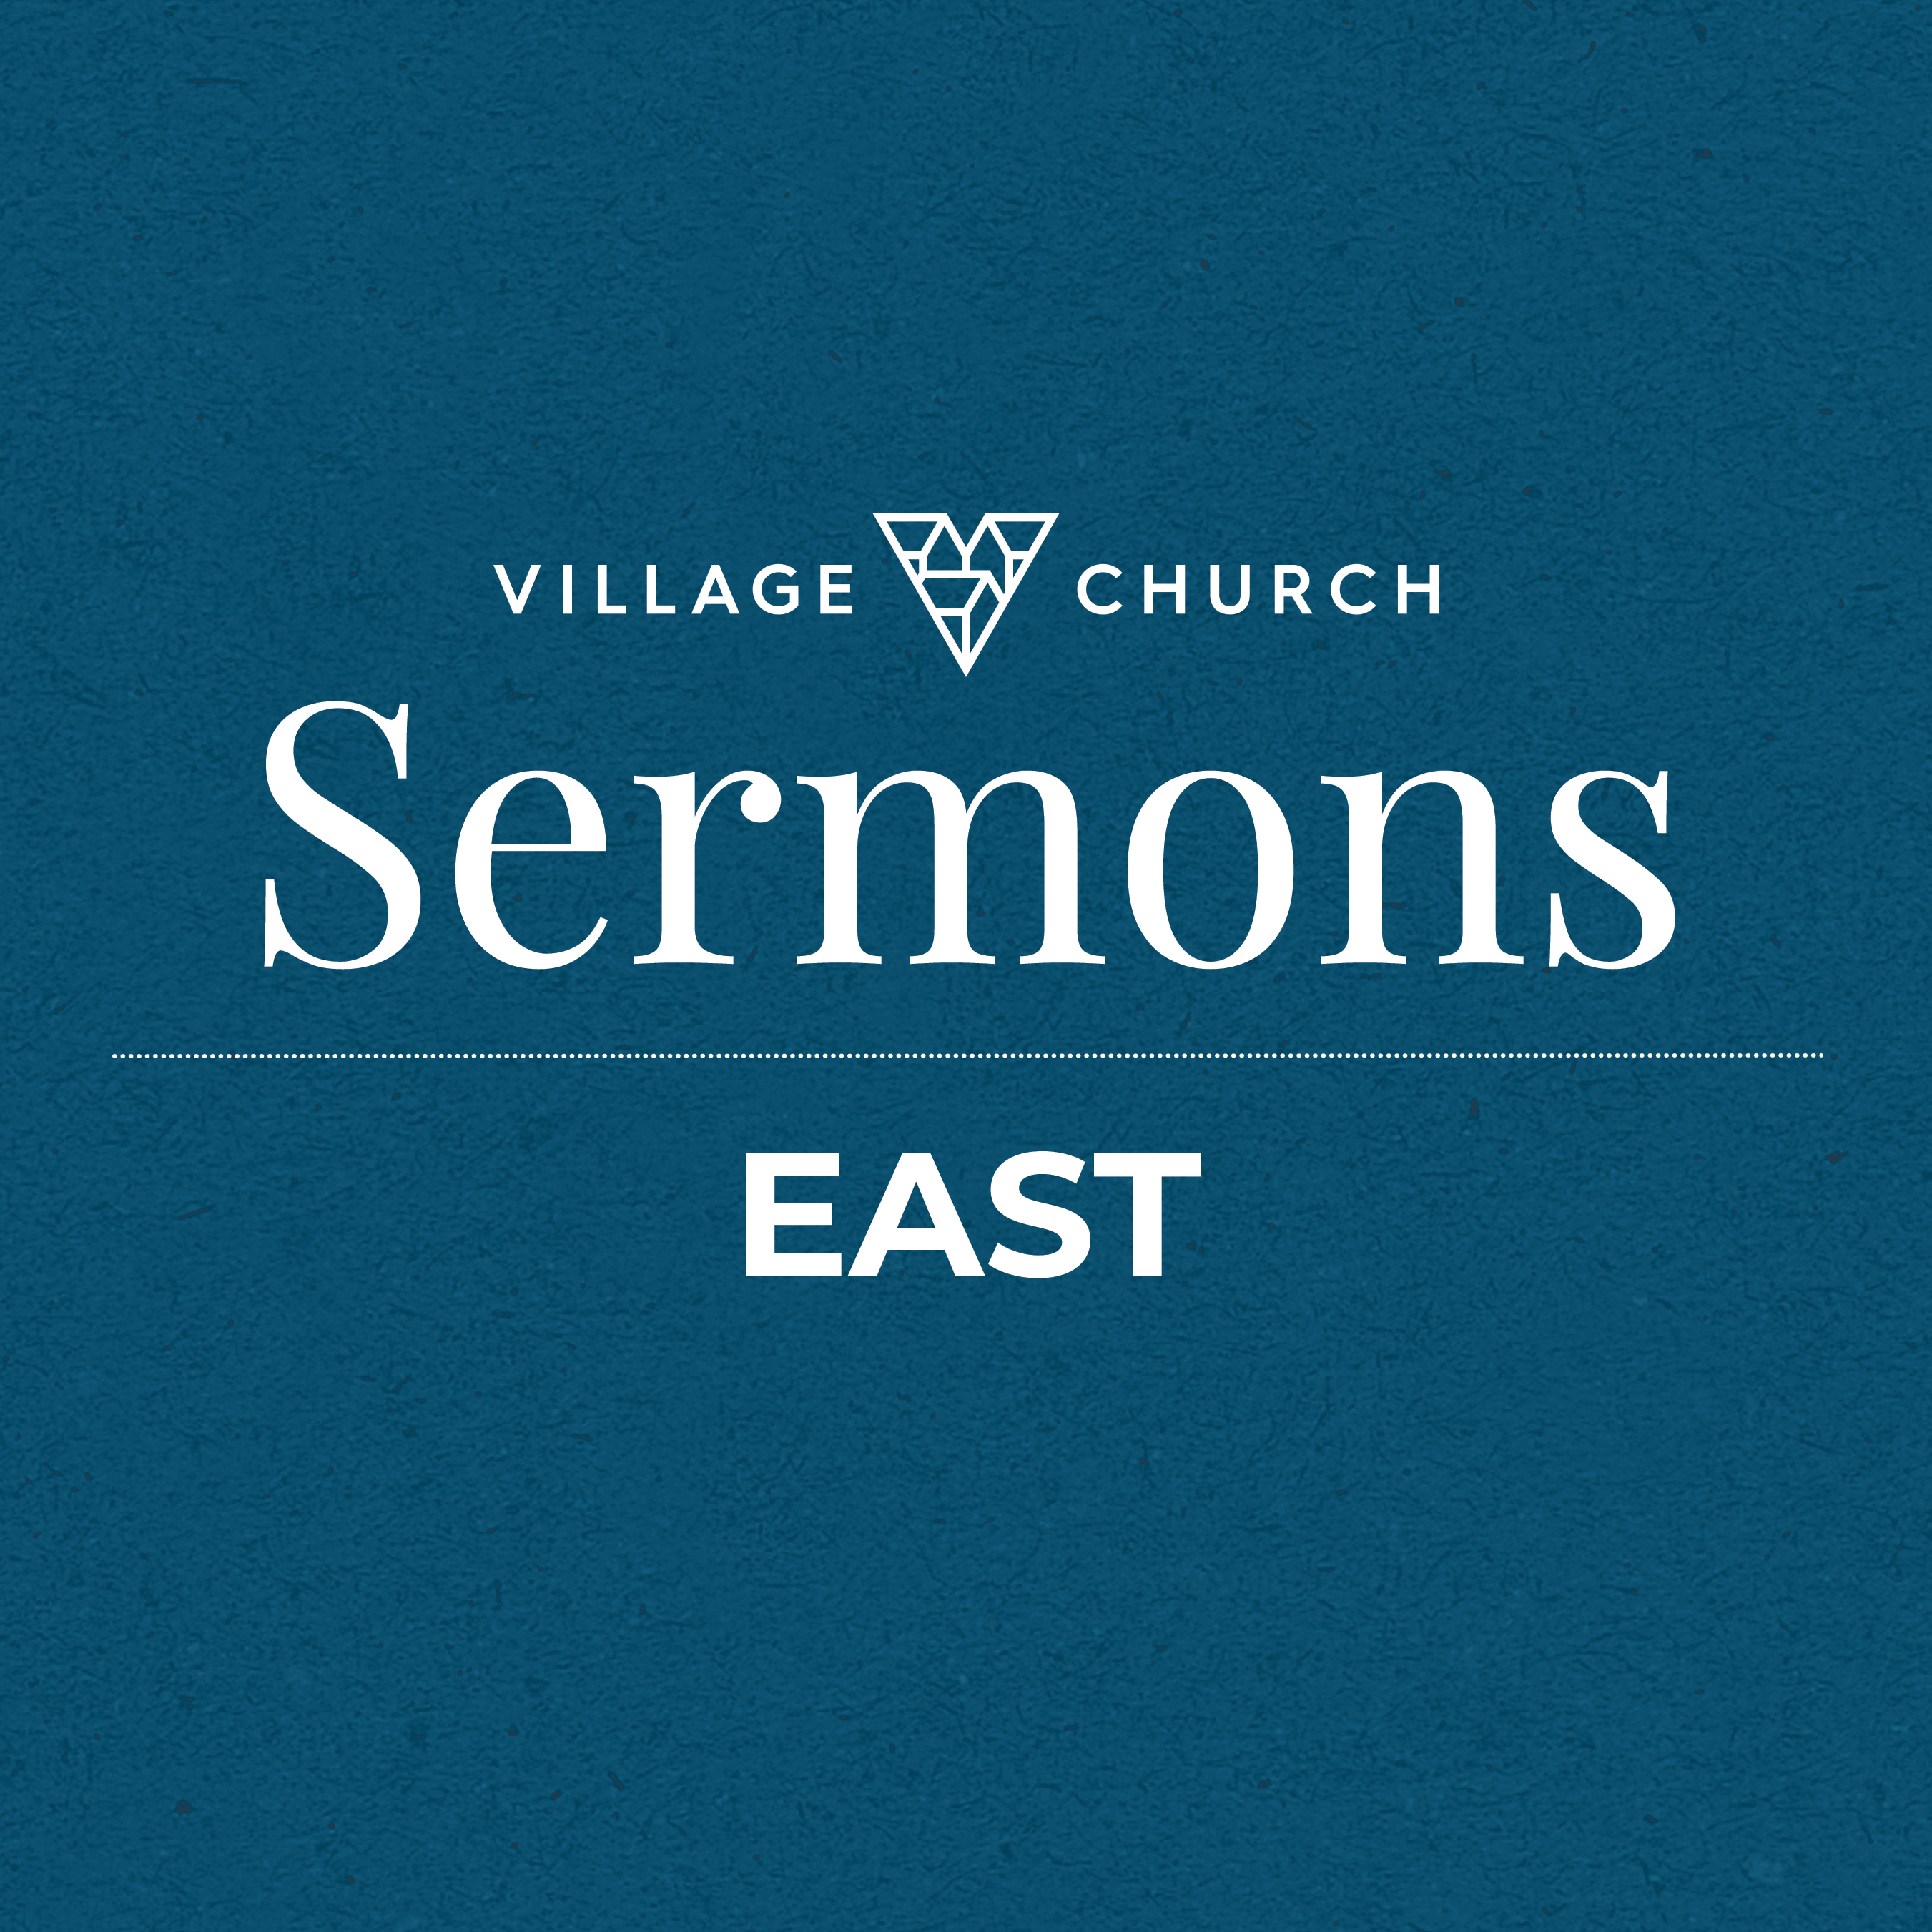 Village Church East: Sermons